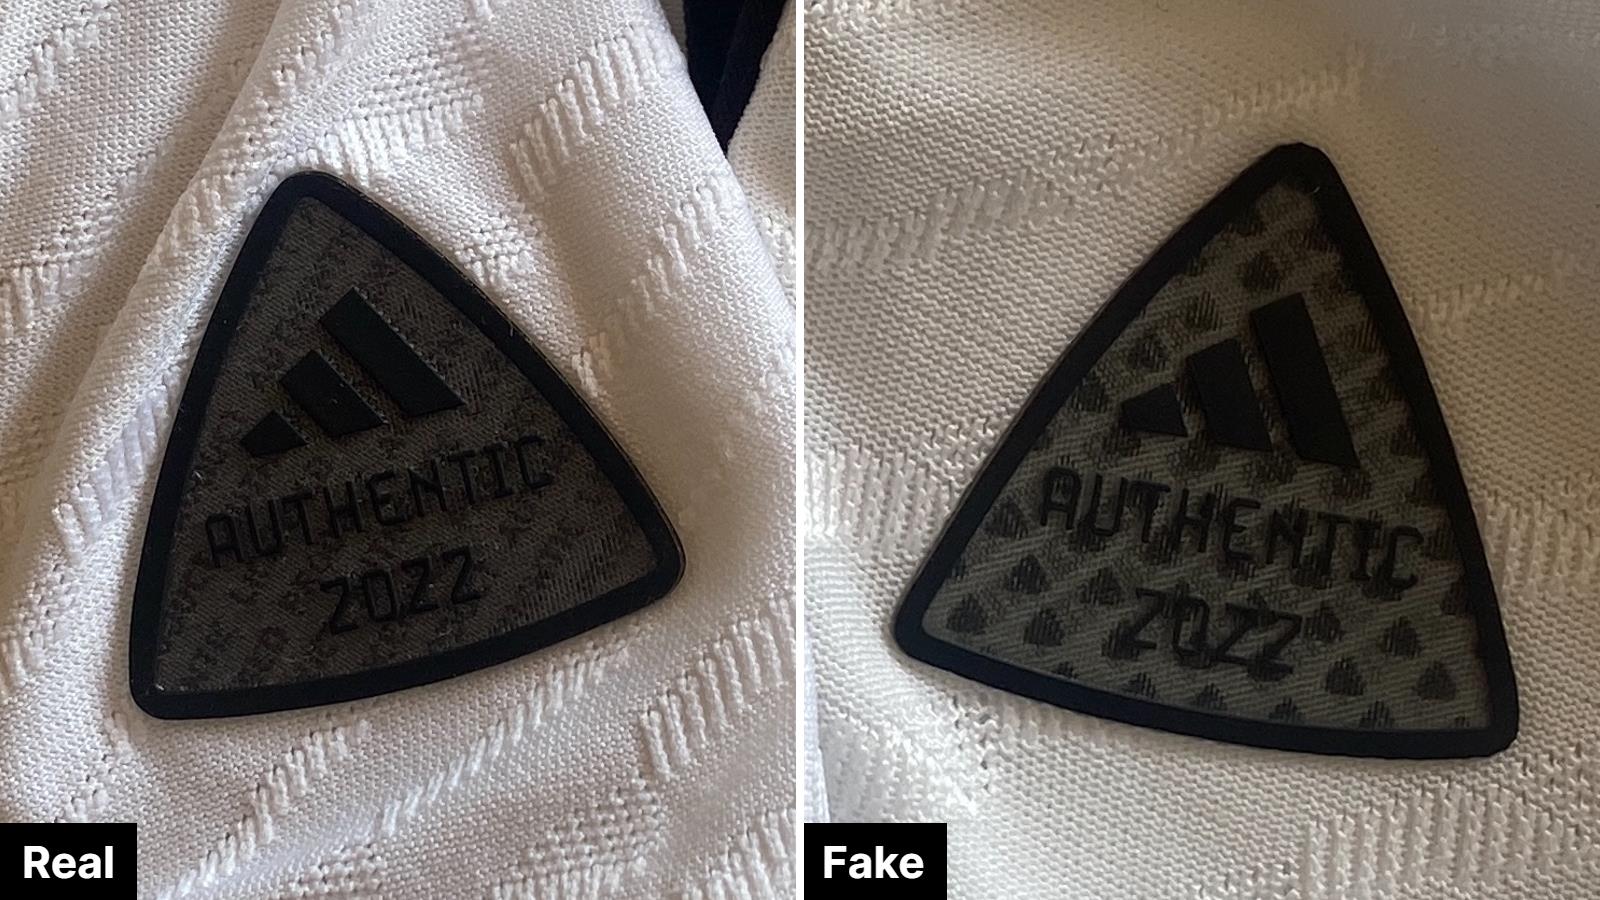 Fake vs Real